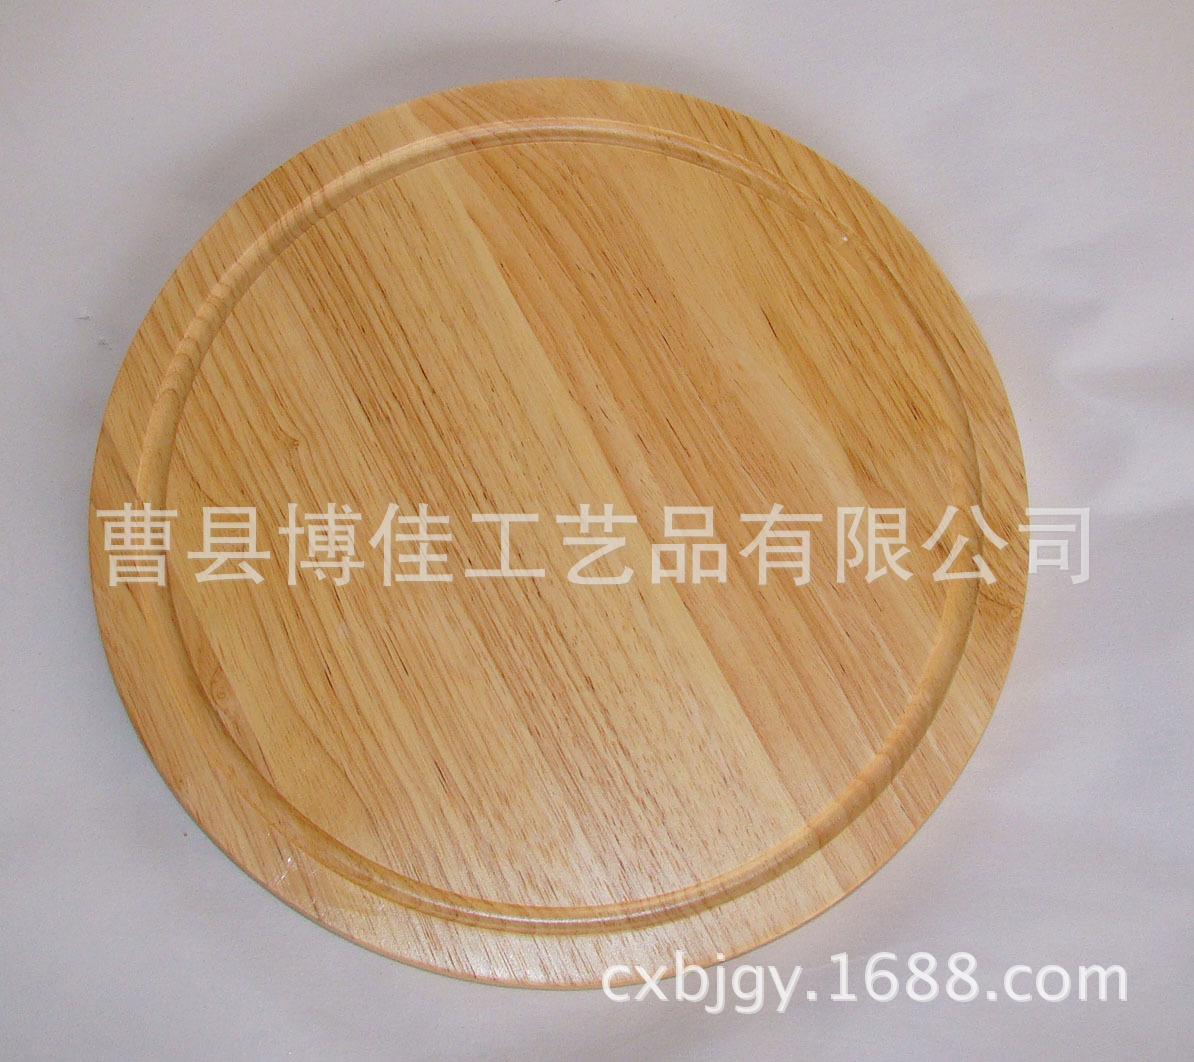 Rubber-Wood-Cutting-Board-RWC0